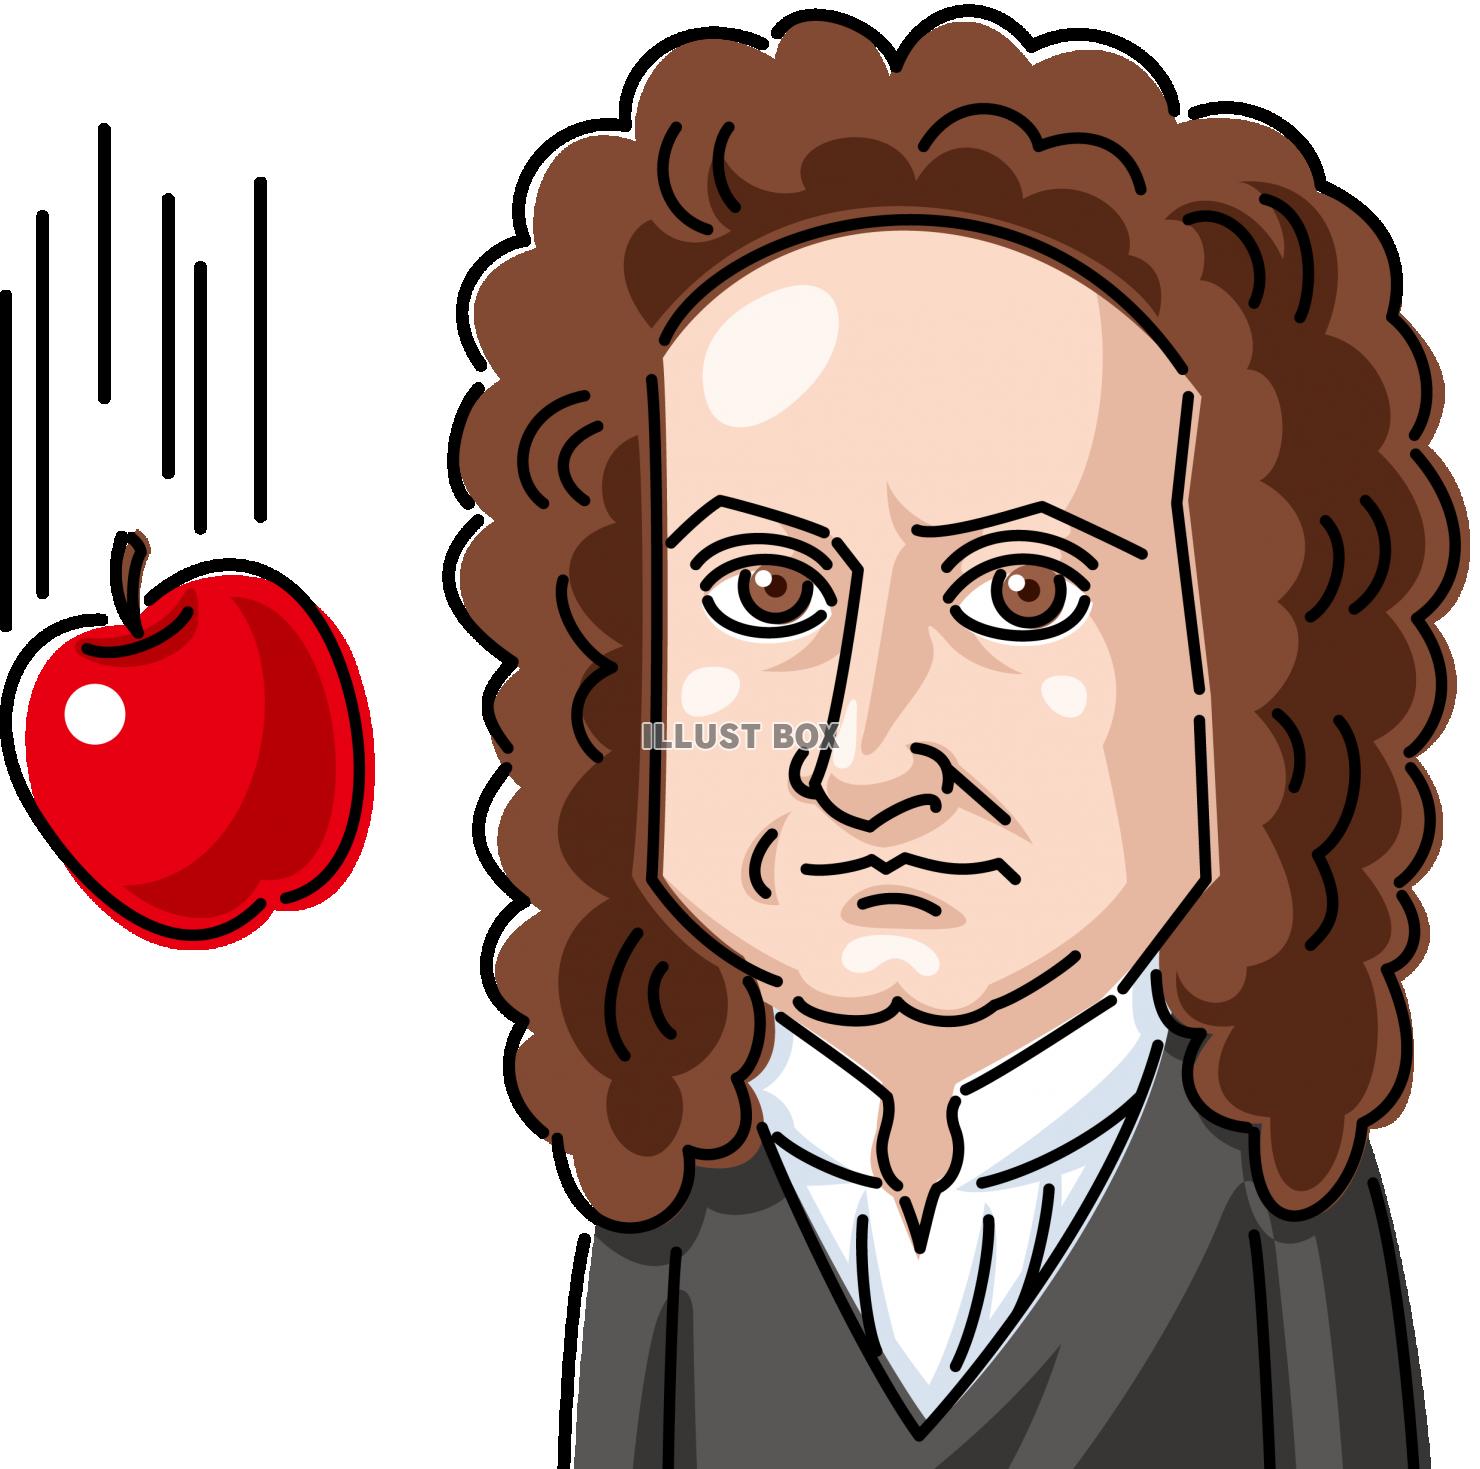  世界の偉人偉大な科学者ニュートンとリンゴ